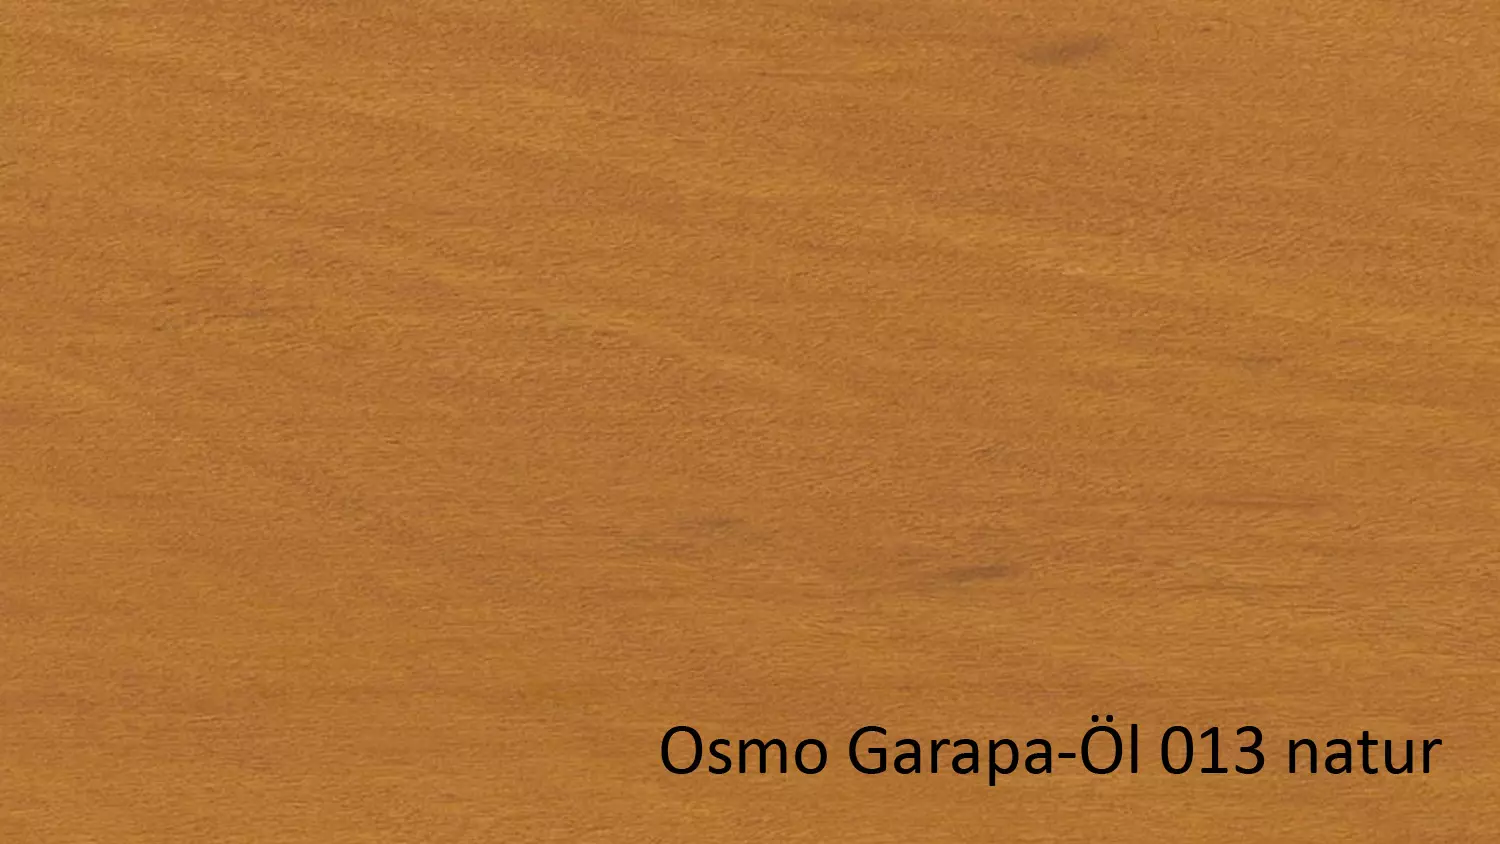 Osmo Terrassenöl 013 Garapa-Öl Naturgetönt transparent 2,5l (für Nadel- u. Edelhölzer) 